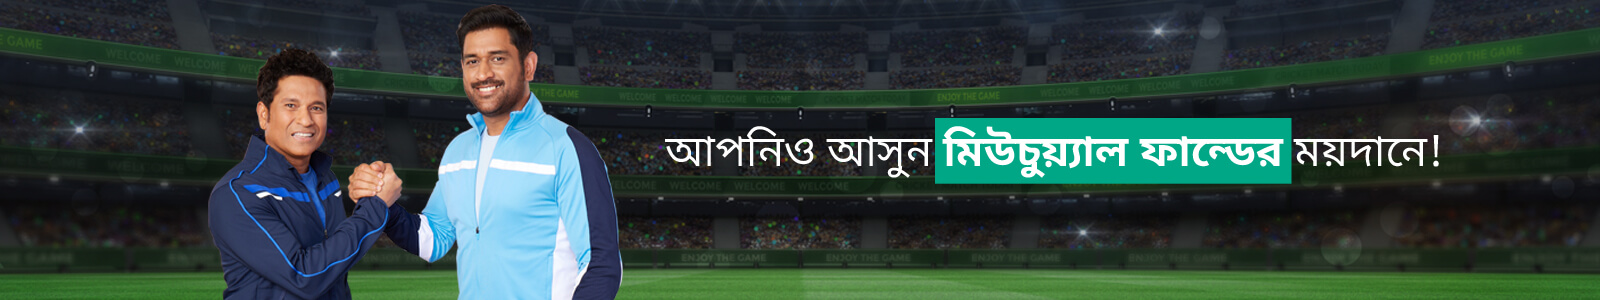 Cricketer banner